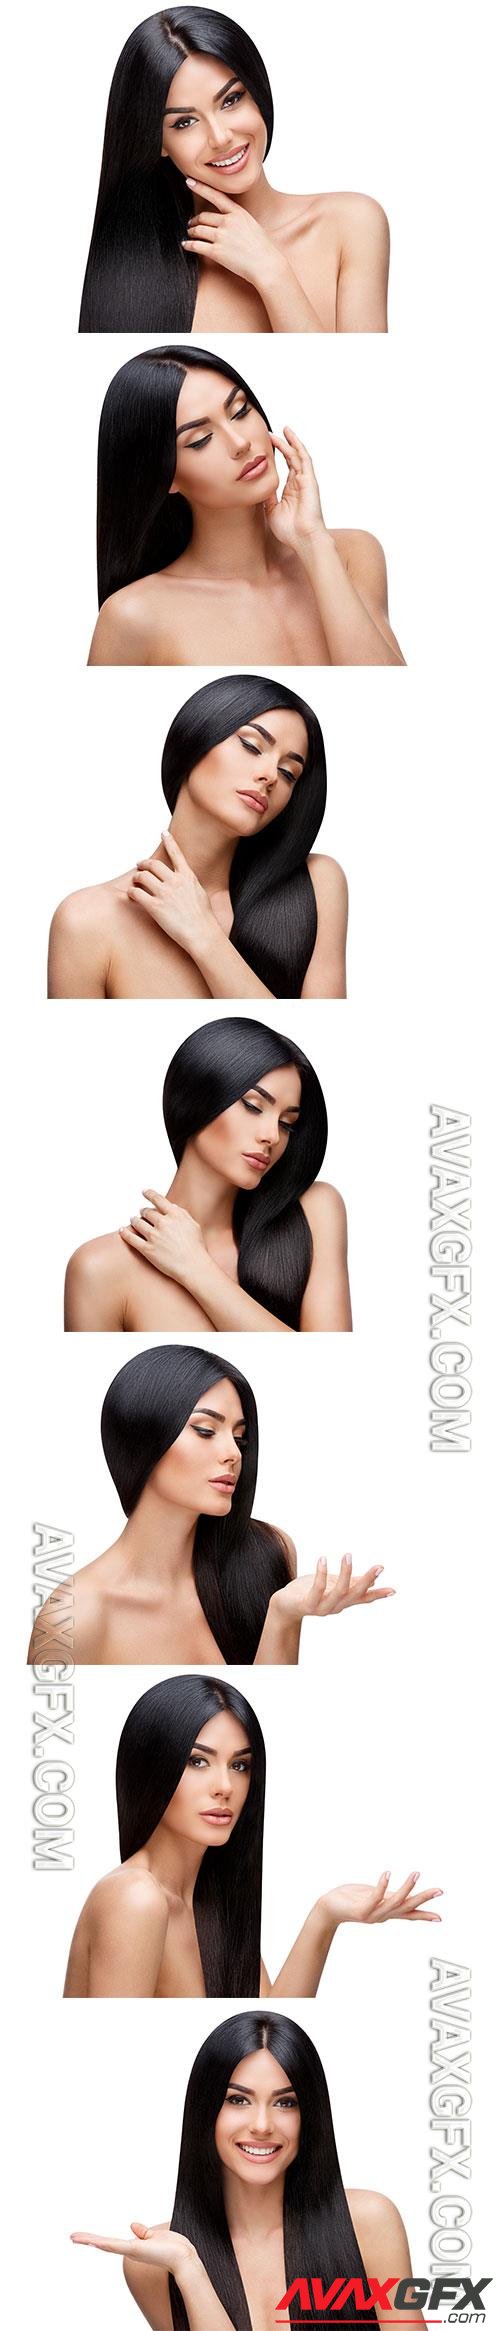 Beautiful woman with long dark hair [JPG]